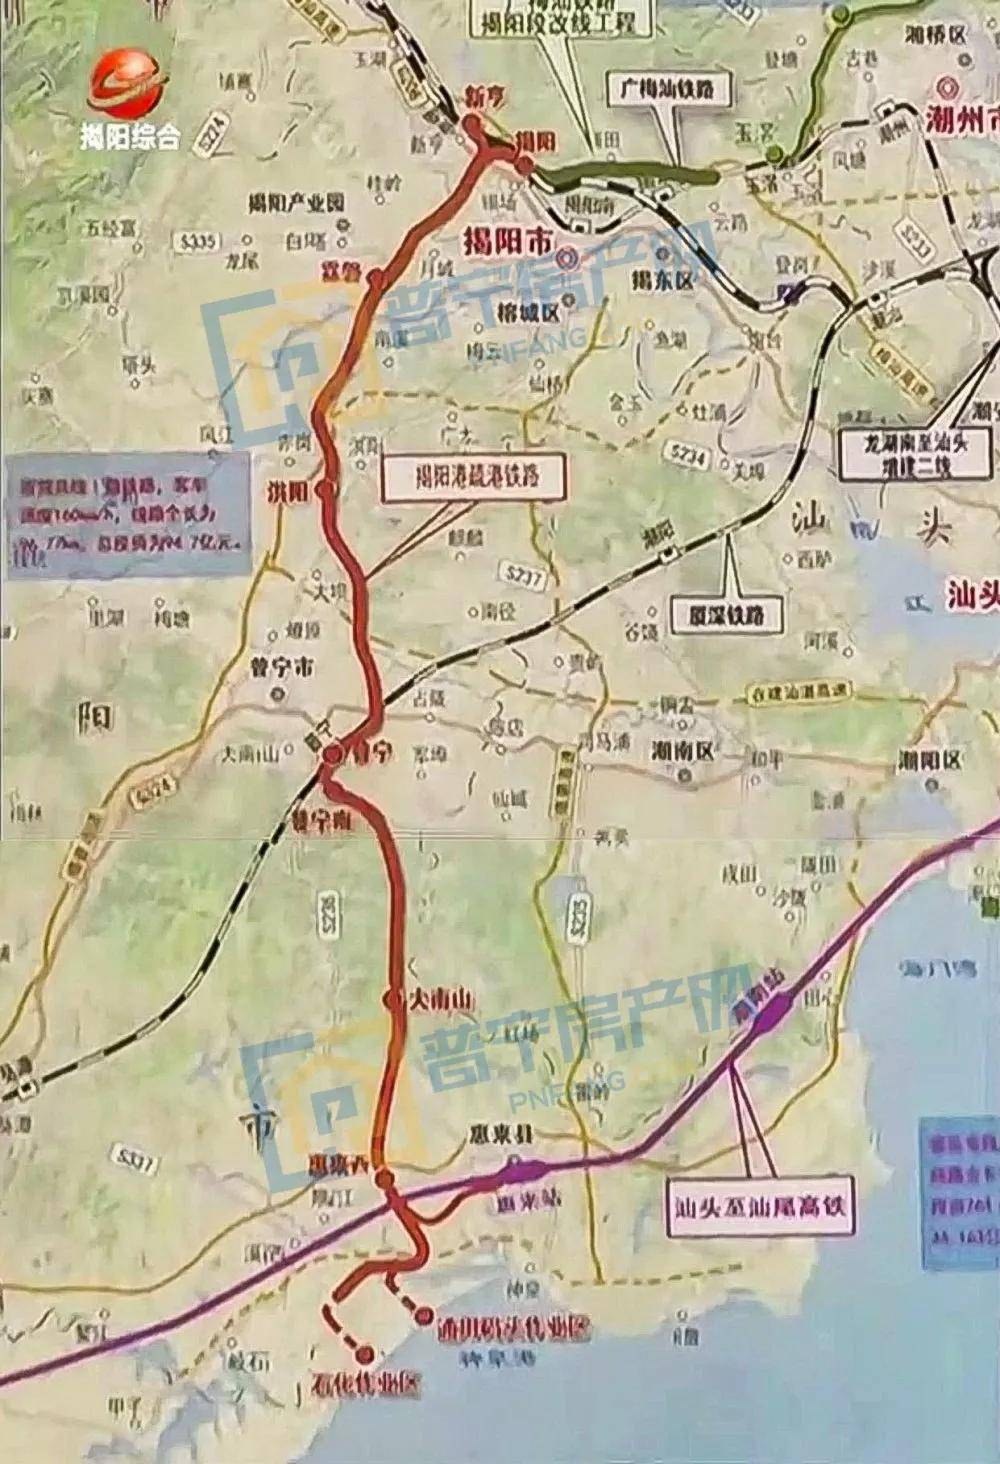 先后经揭东区,揭阳产业园,  ▲揭阳疏港铁路 据线路图显示,揭阳疏港铁